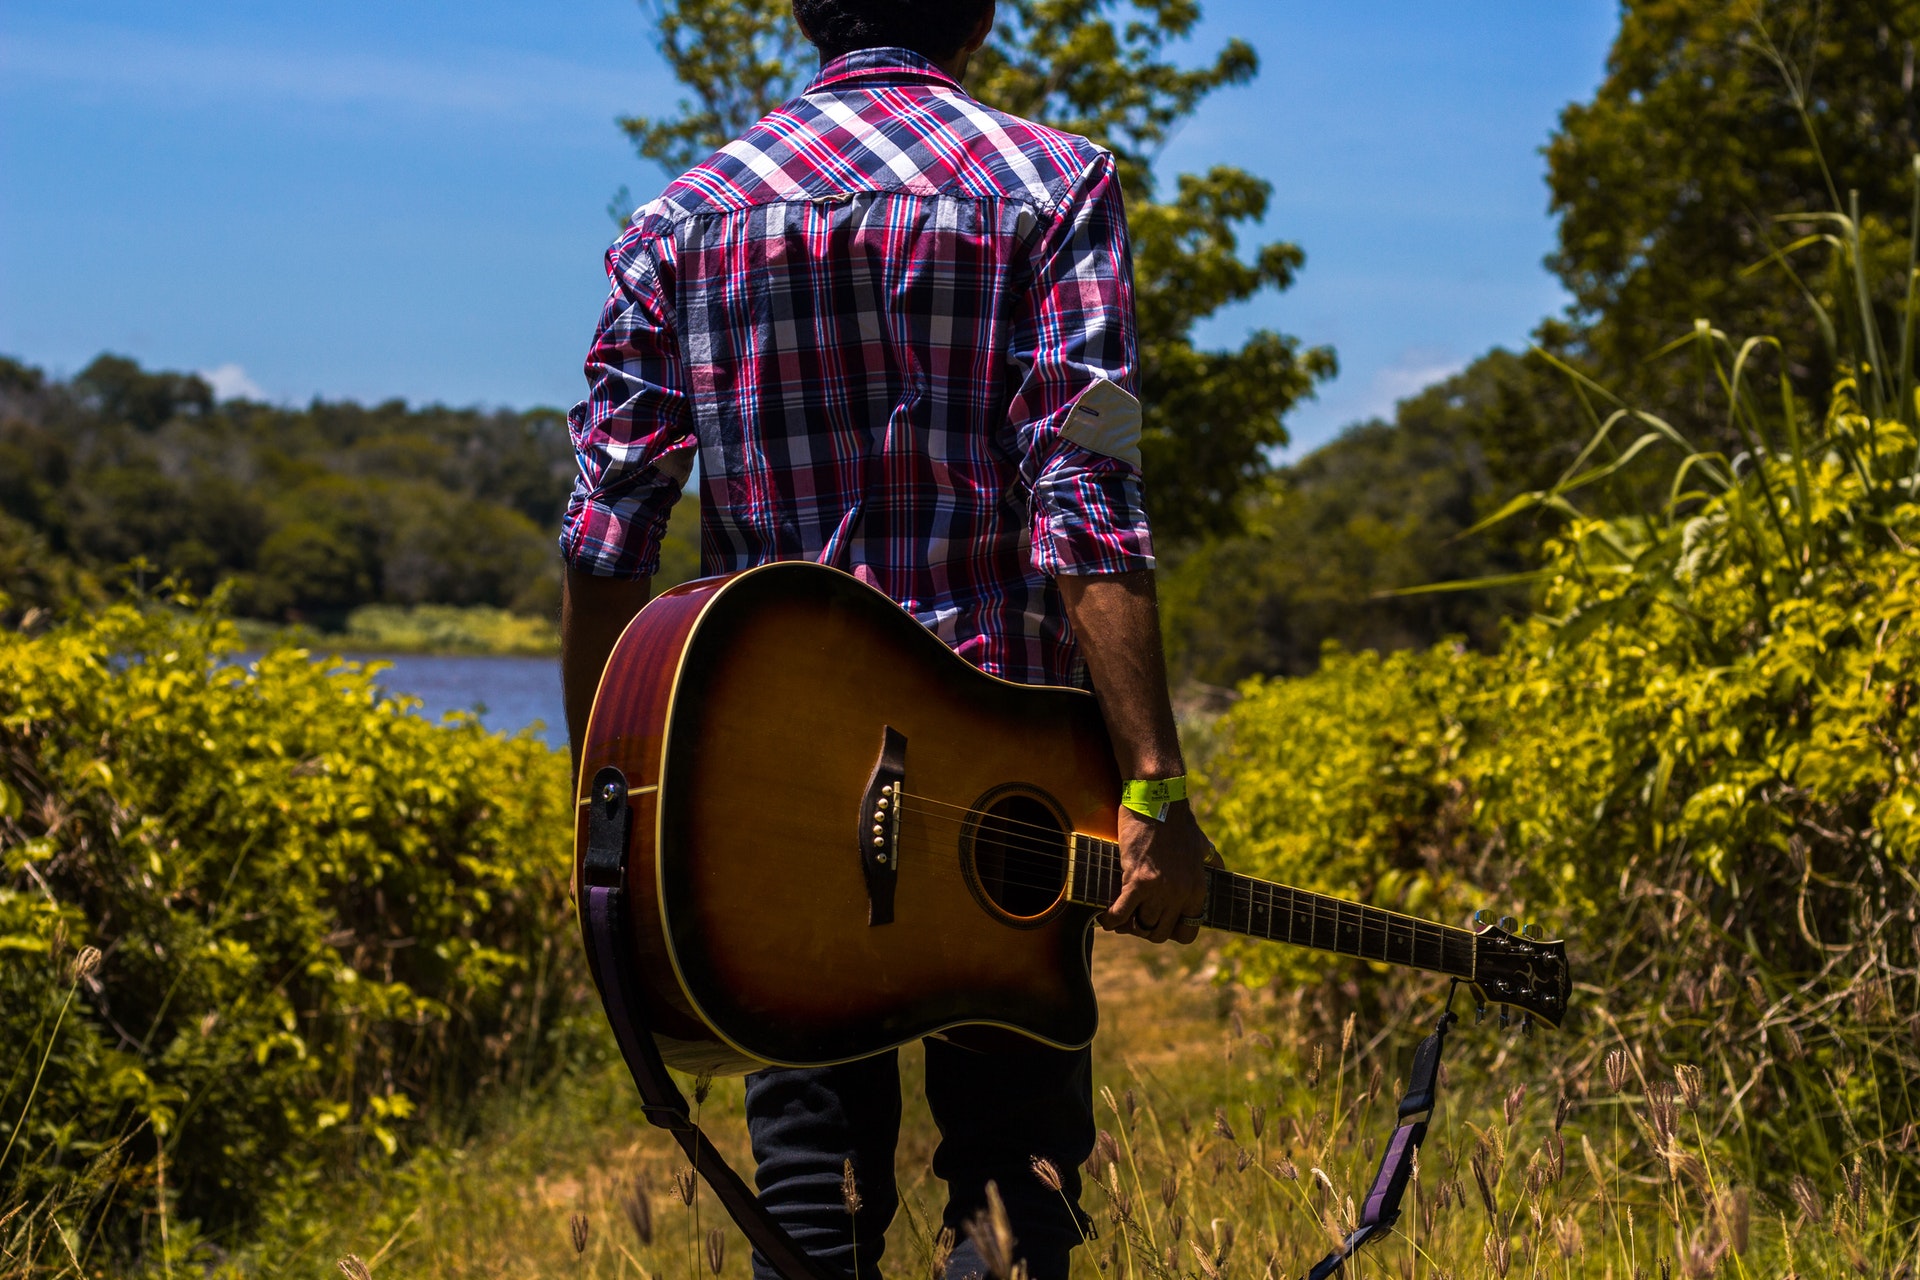 Un homme et sa guitare en campagne